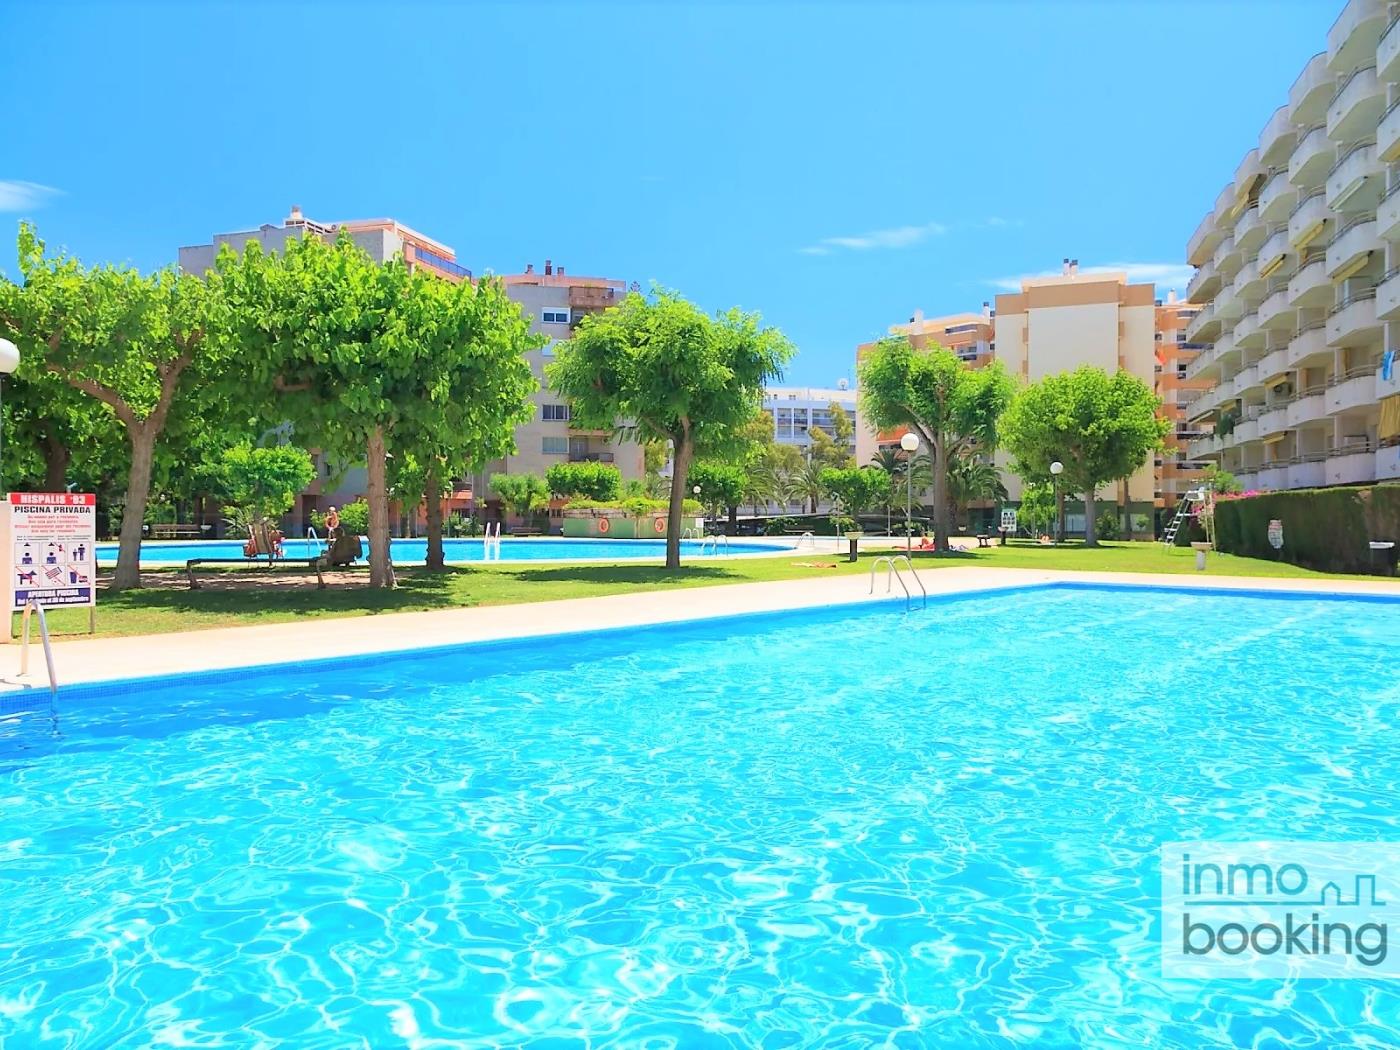 Appartements Cordoba, climatisés, piscine et près de la plage. à salou